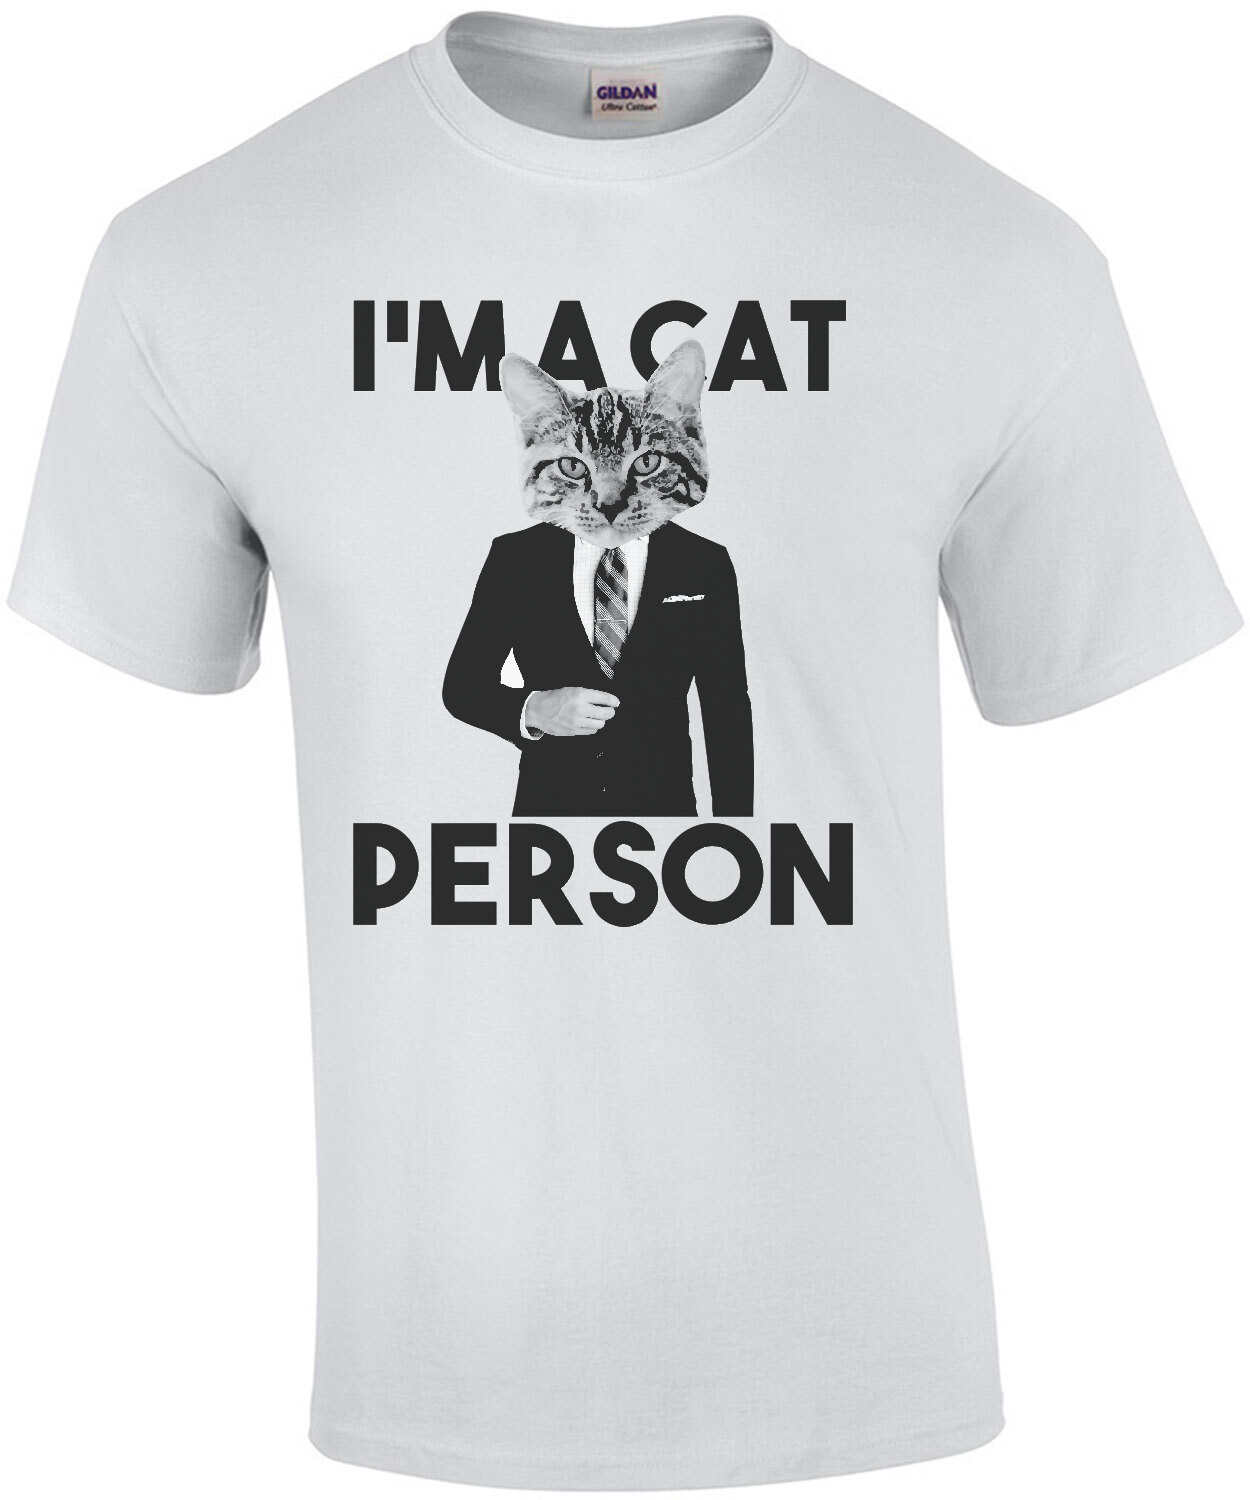 I'm a cat person - funny cat t-shirt